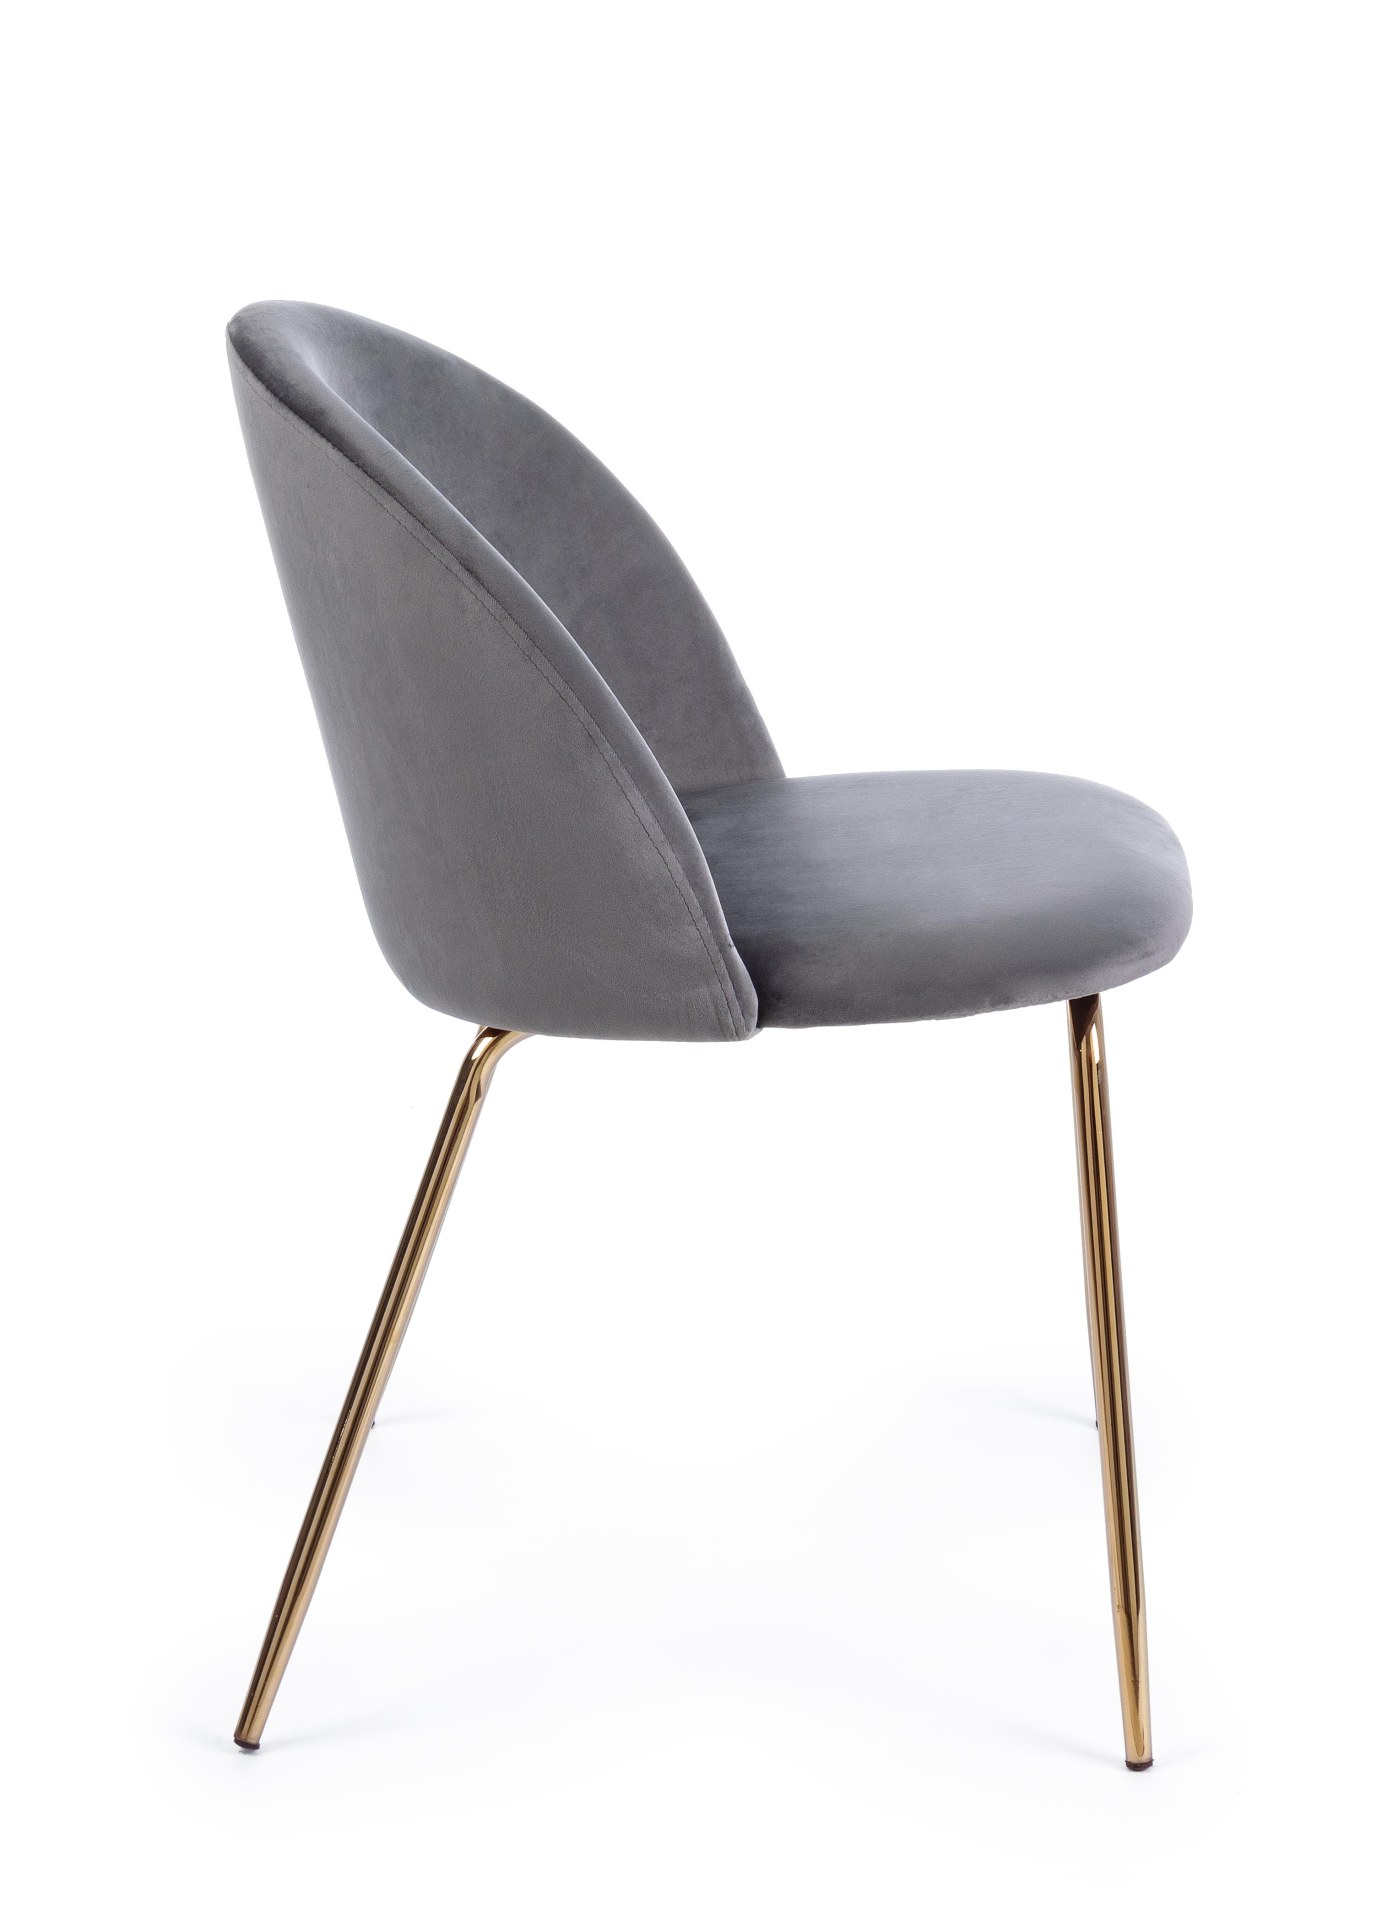 Der Esszimmerstuhl Tanya überzeugt mit seinem modernem Design. Gefertigt wurde der Stuhl aus Samt, welcher einen dunkelgrauen Farbton besitzt. Das Gestell ist aus Metall und ist Gold. Die Sitzhöhe beträgt 46 cm.